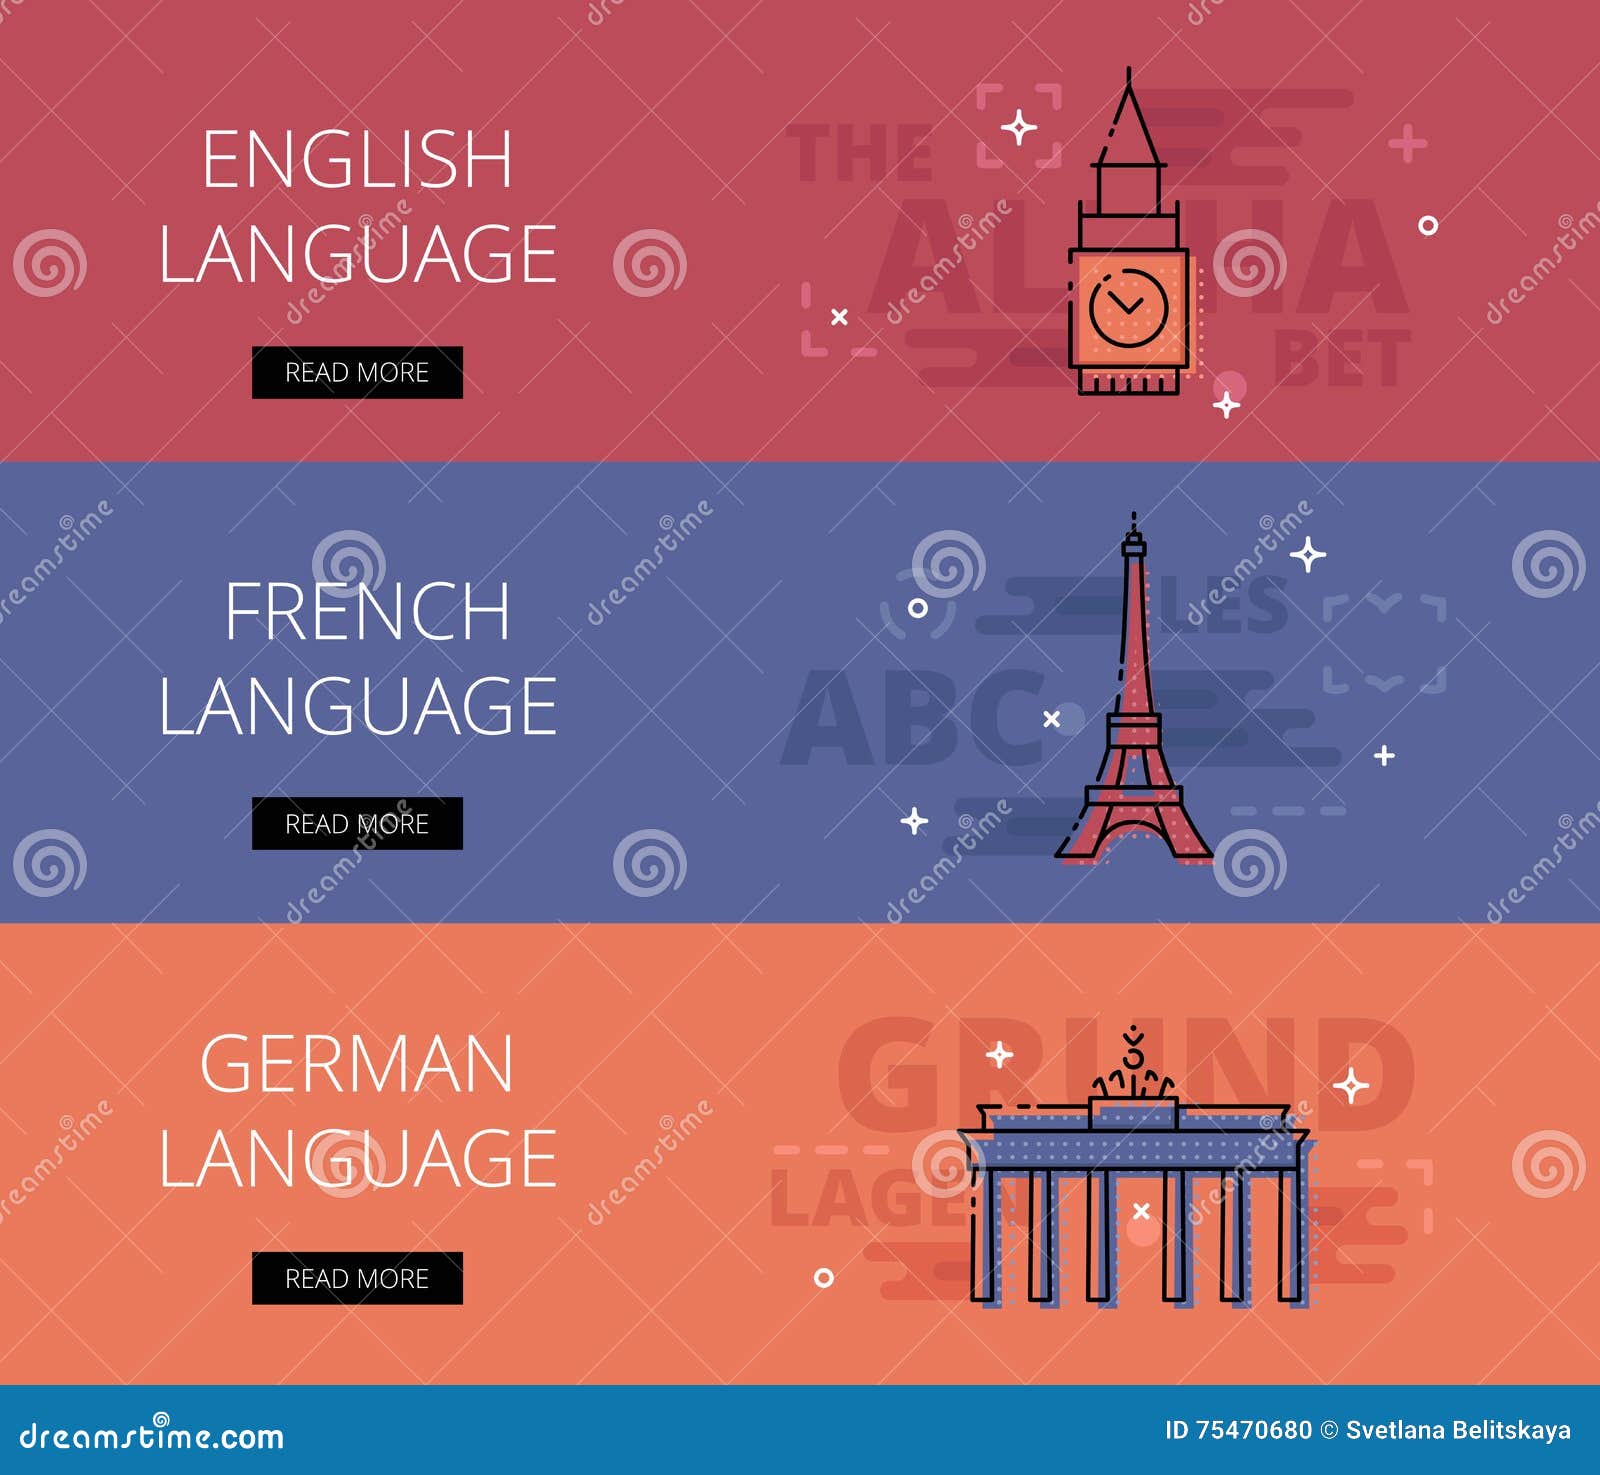 English Language. French Language. German Language. Vector ...